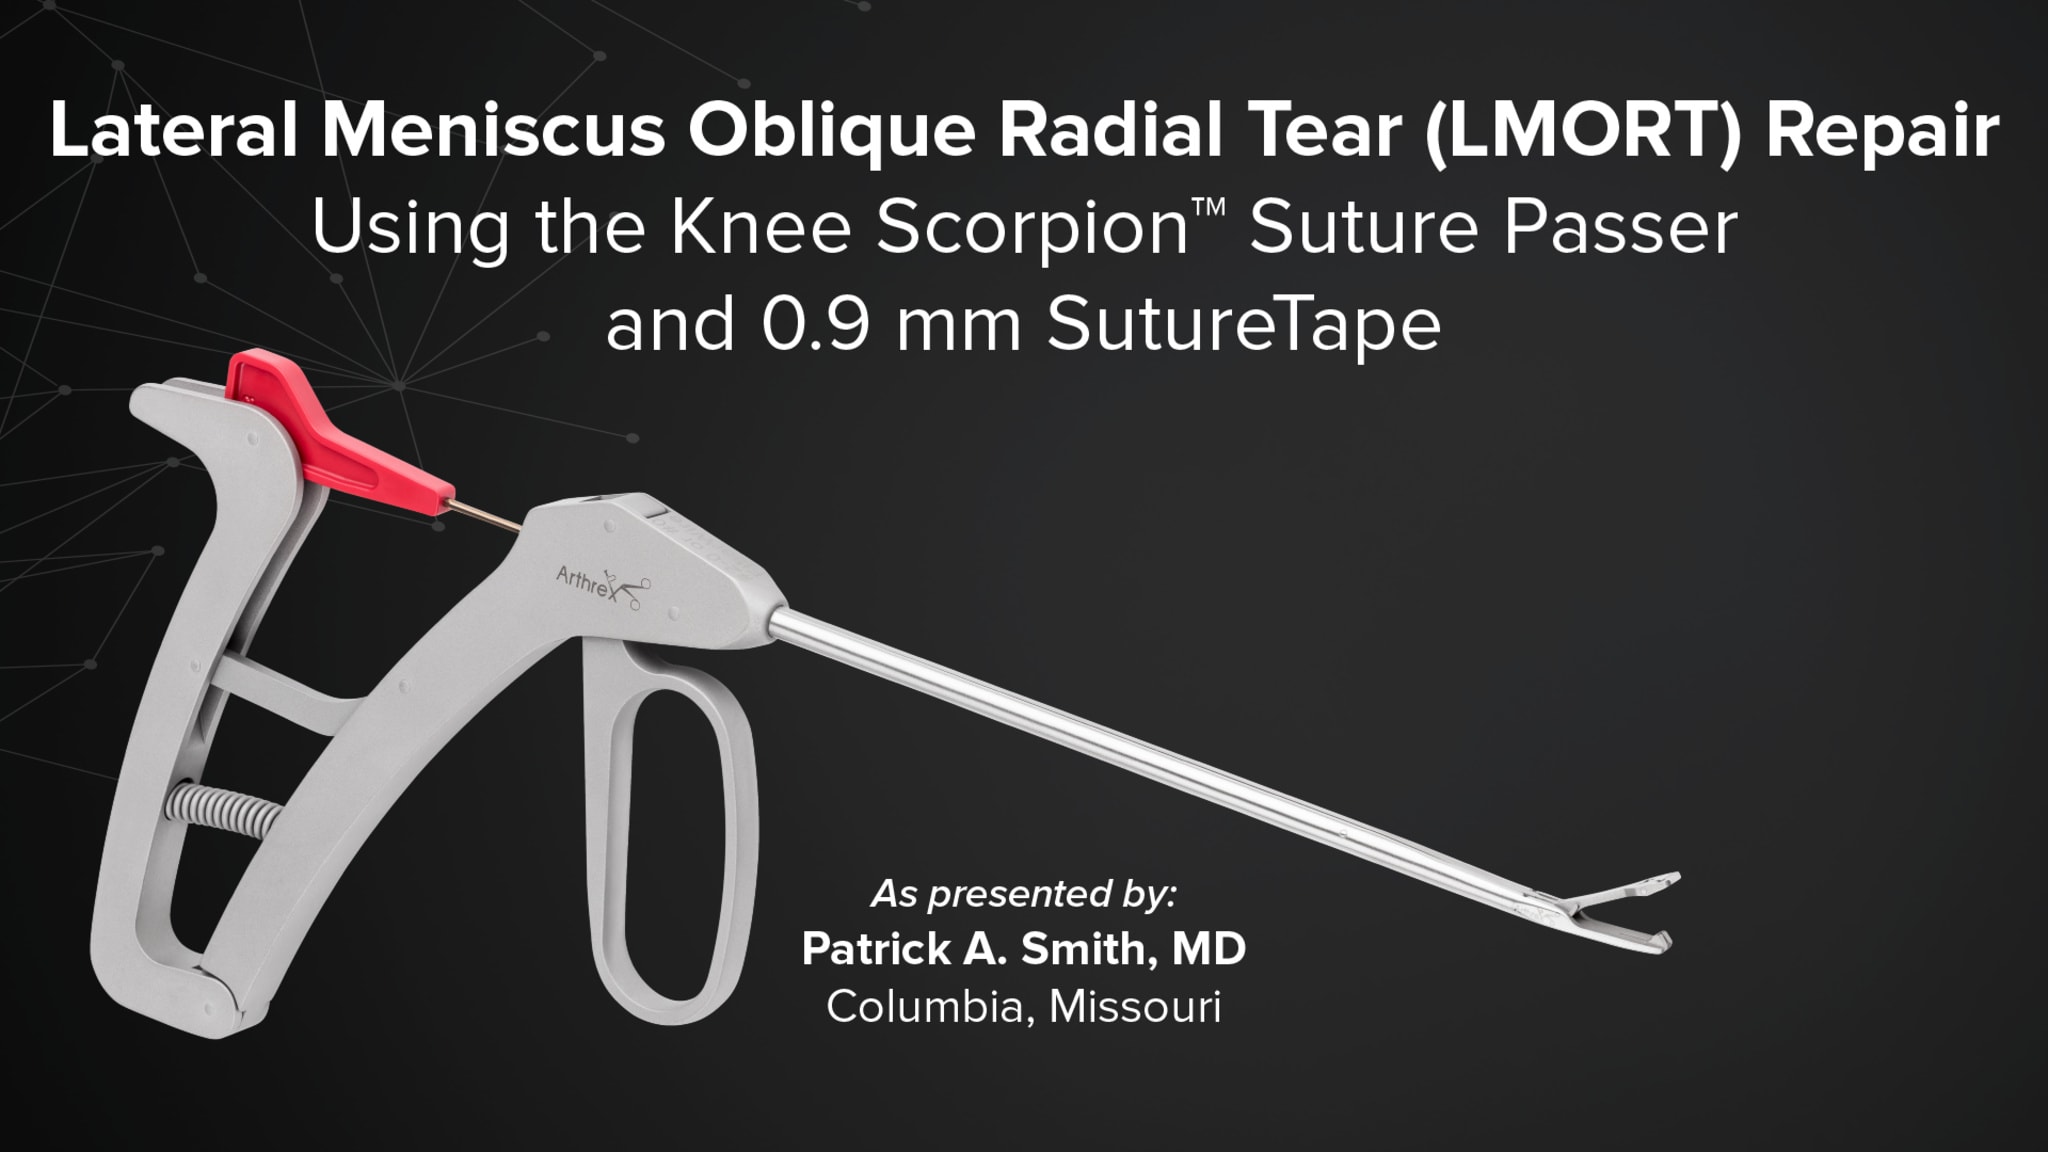 Lateral Meniscus Oblique Radial Tear (LMORT) Repair Using the Knee Scorpion™ Suture Passer and 0.9 mm SutureTape